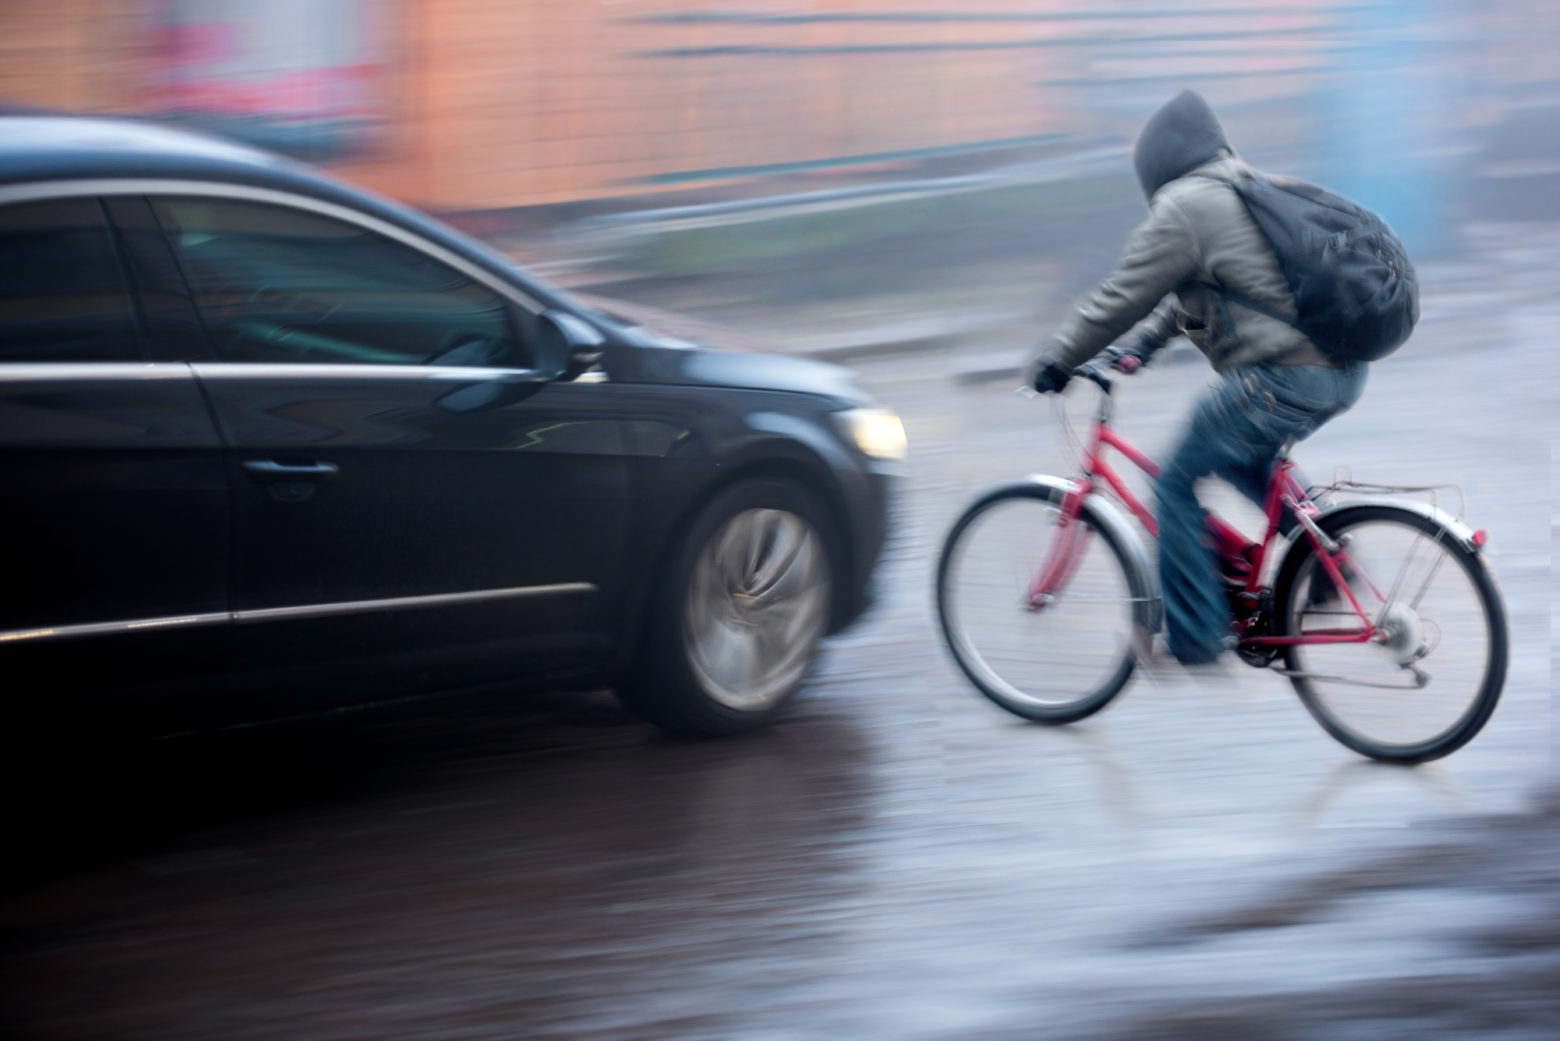 When a Car Driver Strikes a Cyclist - car approaching cyclist